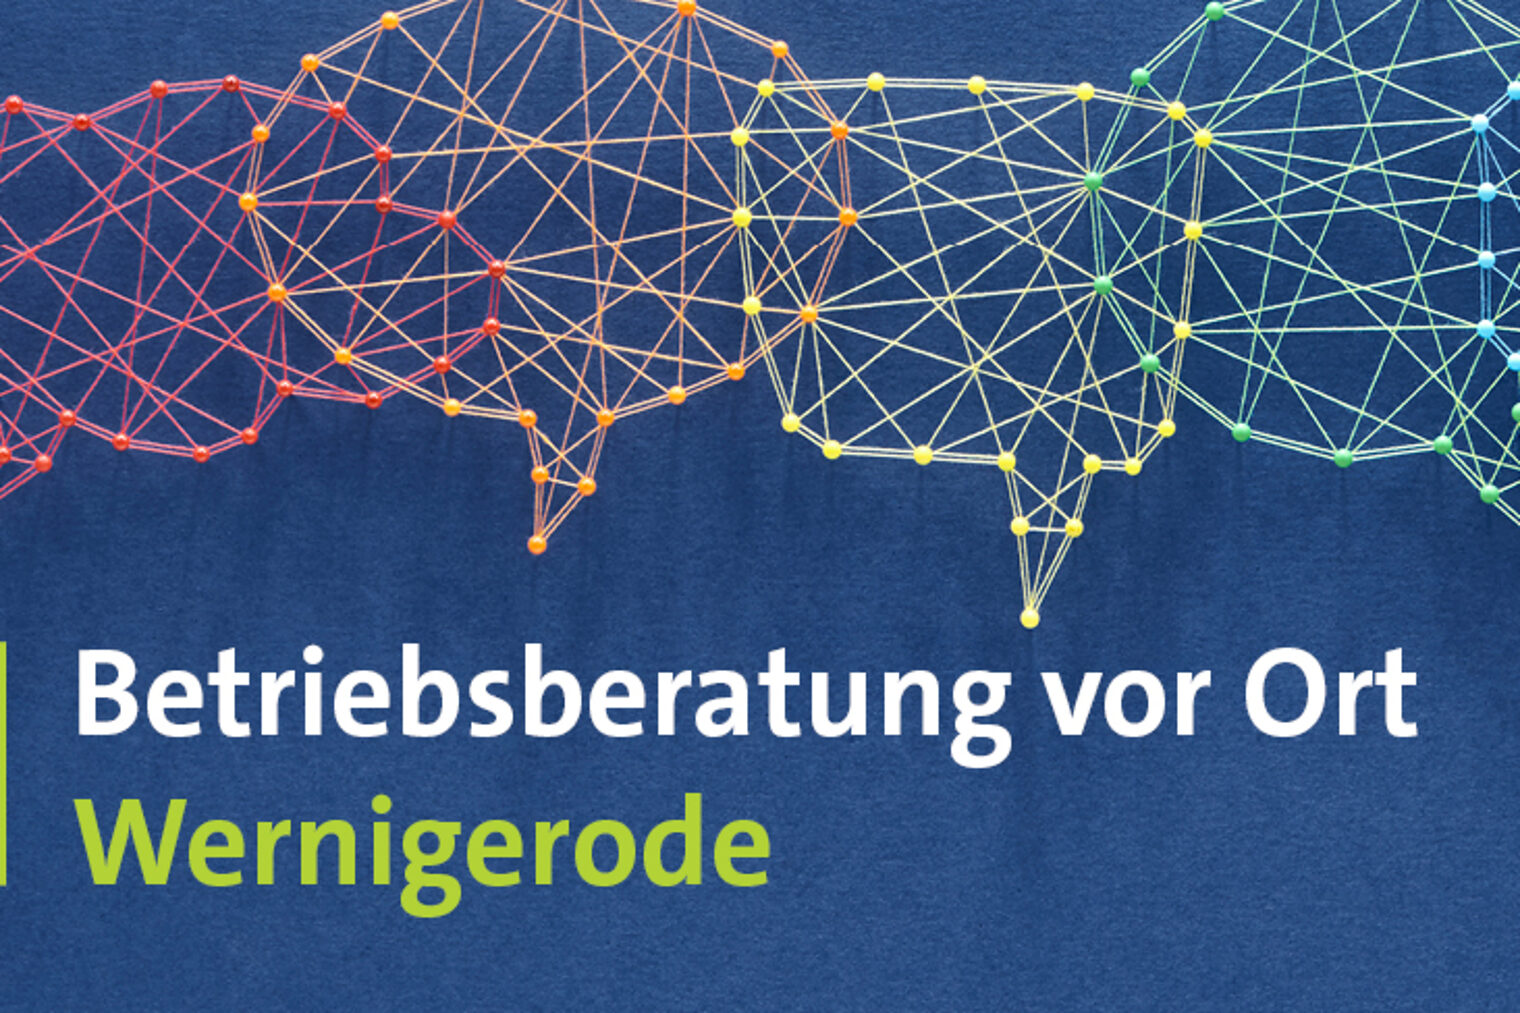 Betriebsberatung-Wernigerode-Webbanner-1440x48811